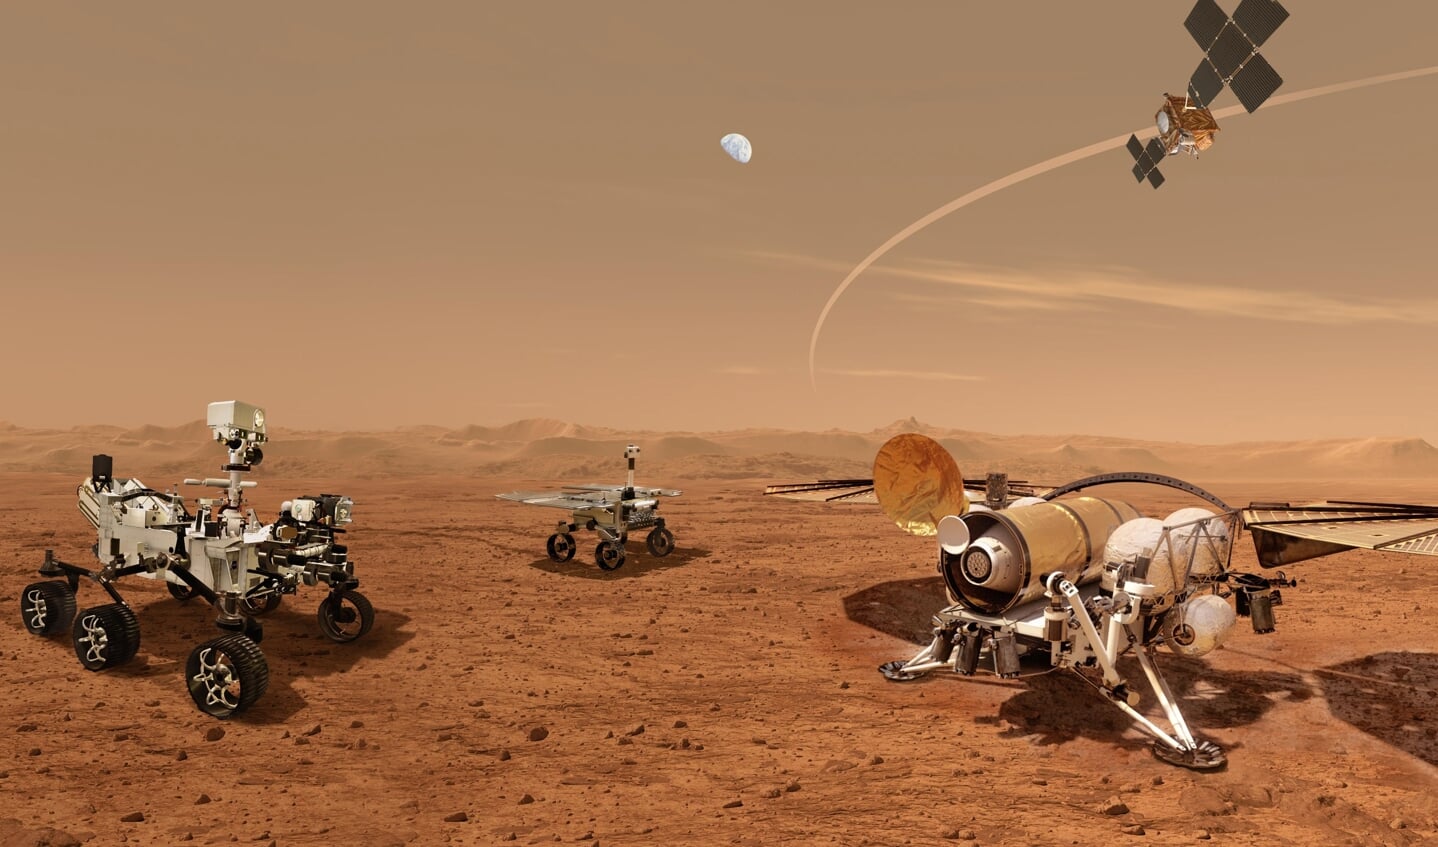 min Knorretje prioriteit Met de Mars-robot Perseverance op zoek naar leven. 'We willen meer  autonomie in de ruimtevaart' - Nederlands Dagblad. De kwaliteitskrant van  christelijk Nederland